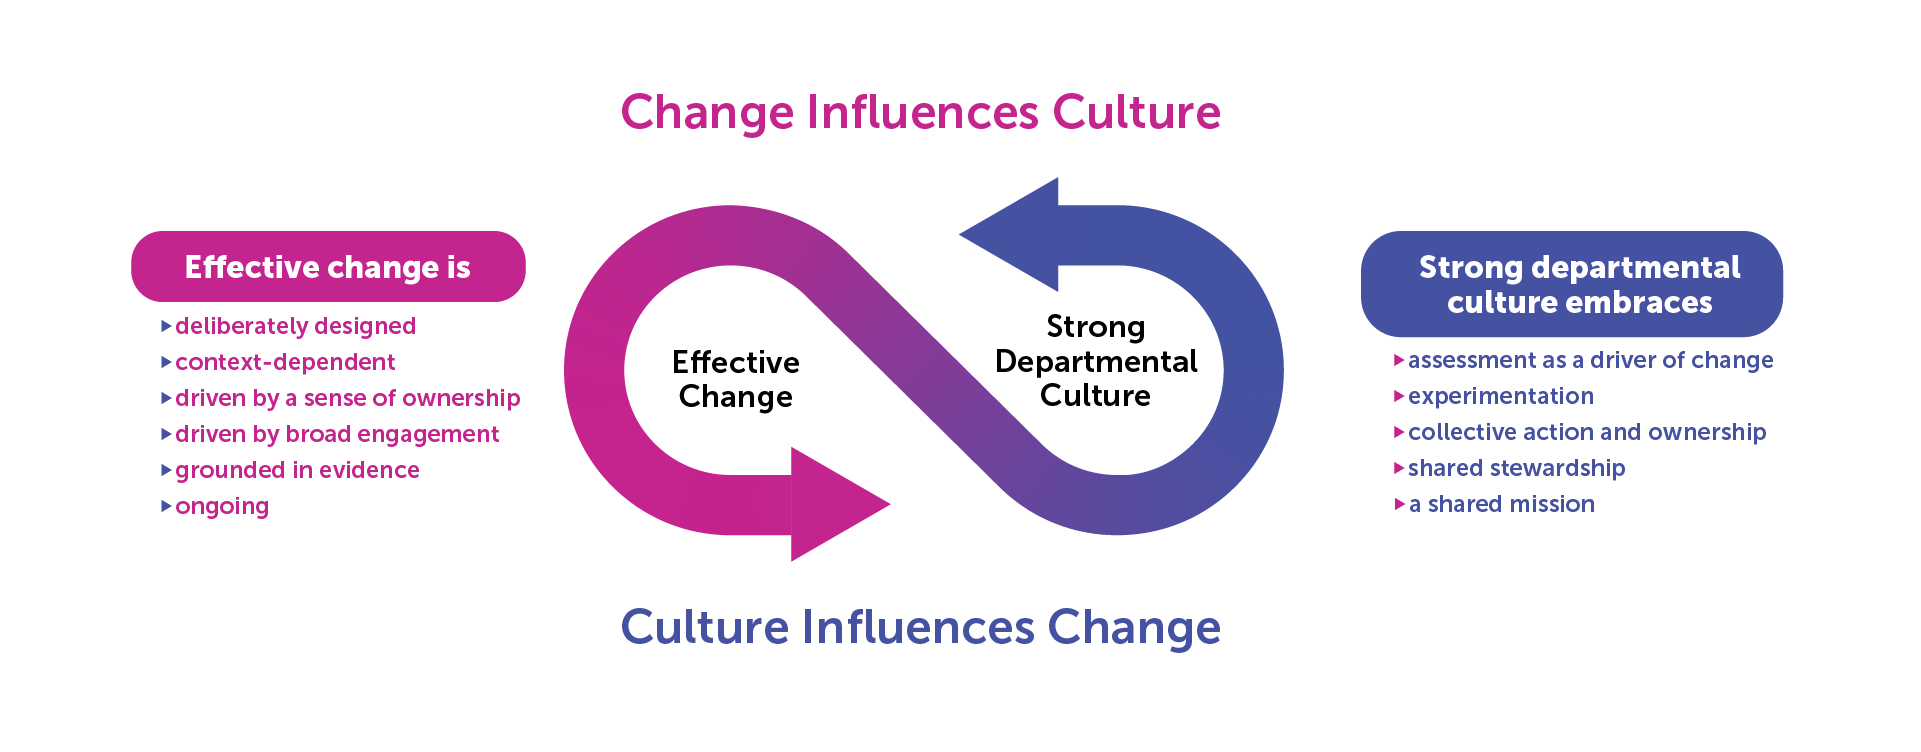 Change Influences Culture